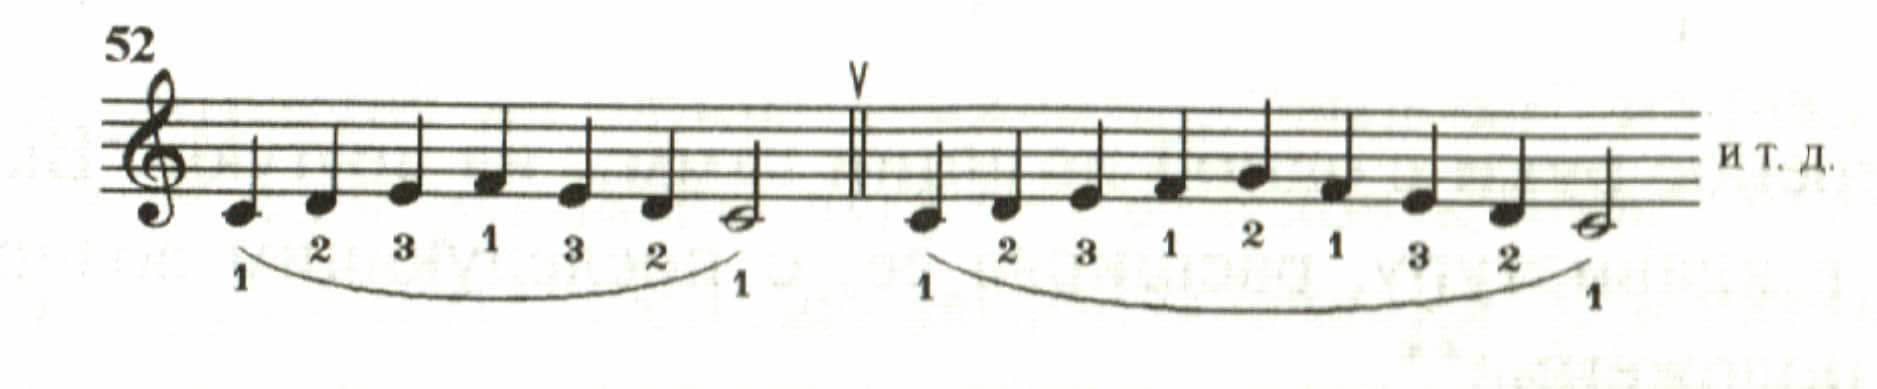 Откртый урок по спецальности Фортепиано на тему Подготовка ученика-пианиста к правильному исполнению гамм